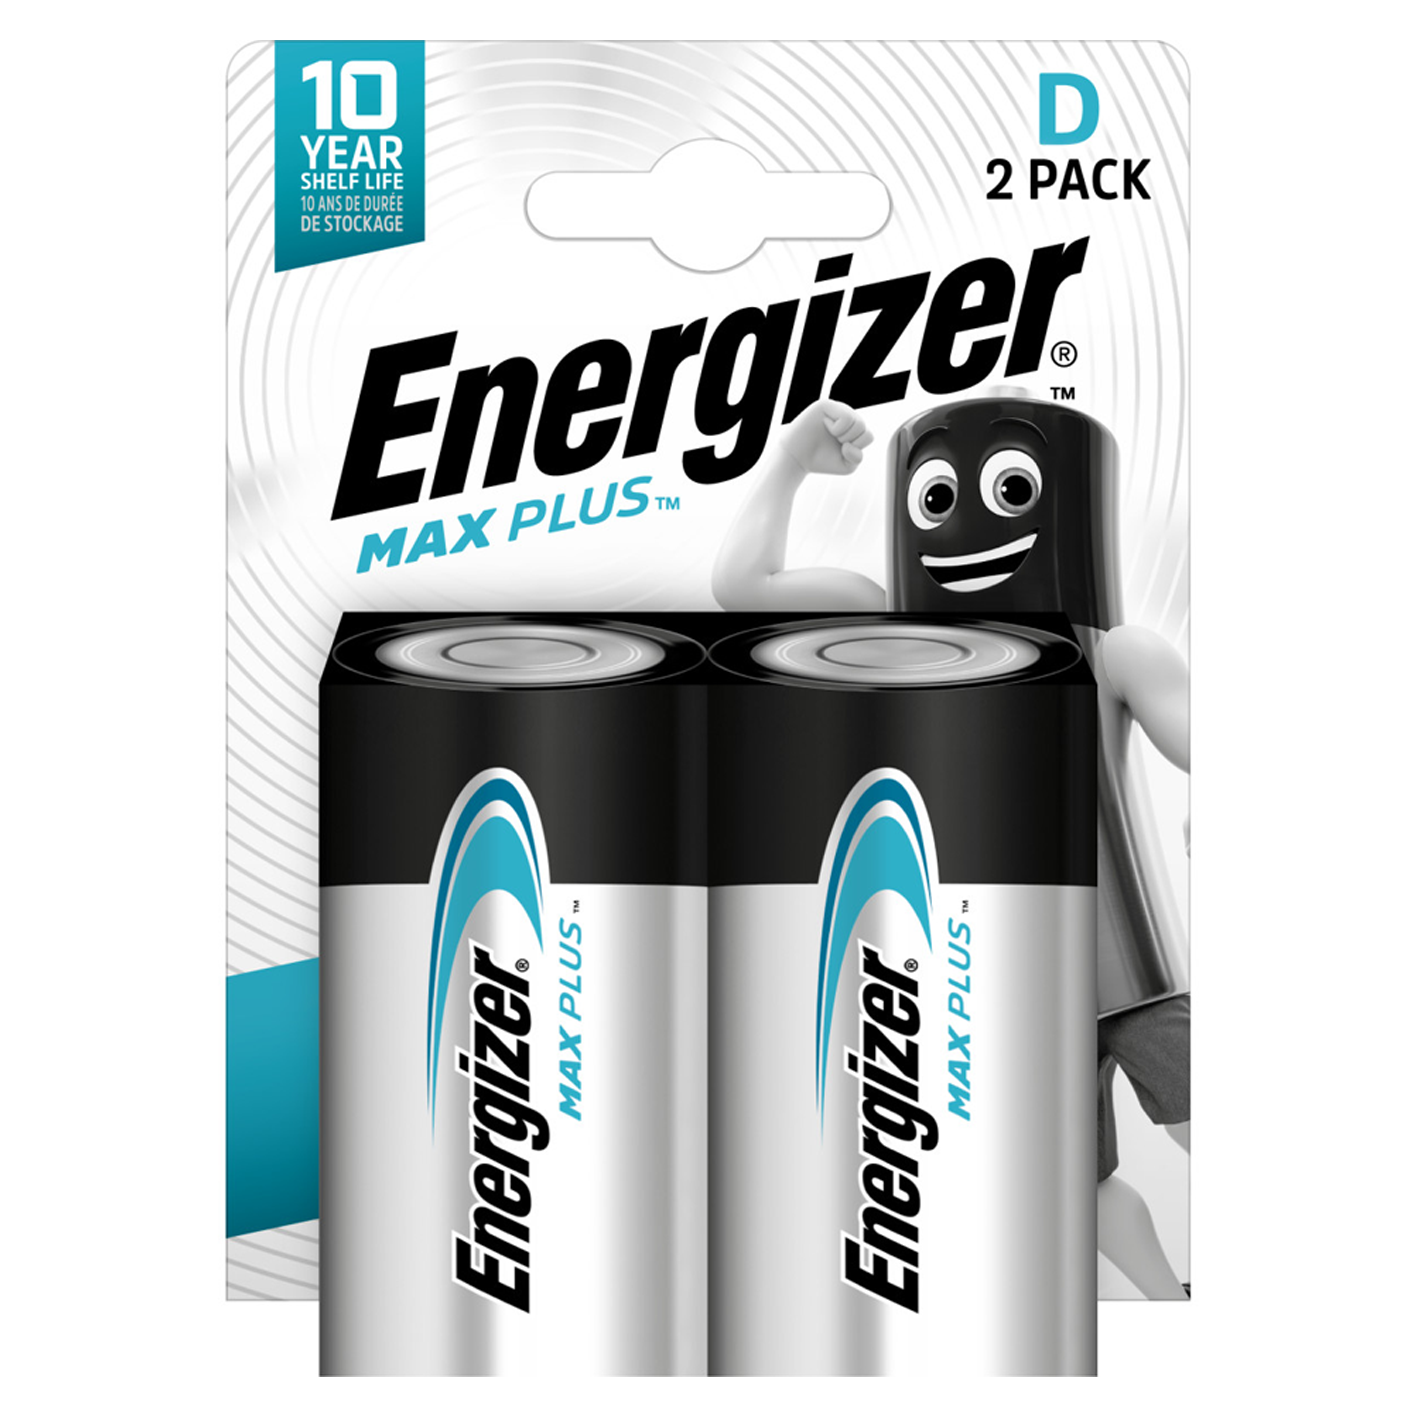 Energizer® D Size Max Plus alcalino, paquete de 2